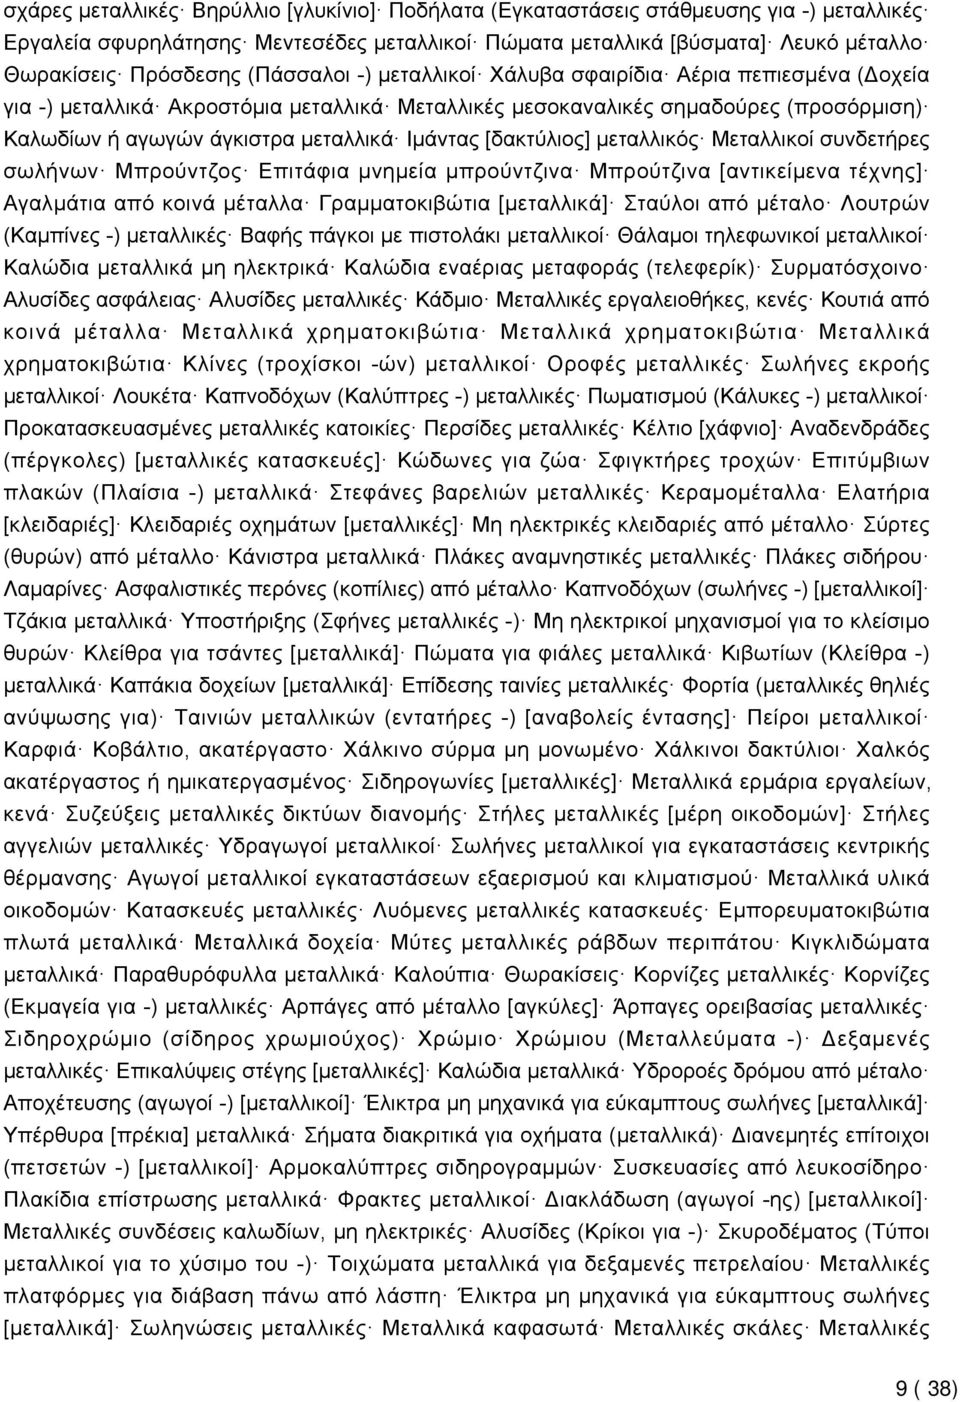 [δακτύλιος] μεταλλικός Μεταλλικοί συνδετήρες σωλήνων Μπρούντζος Επιτάφια μνημεία μπρούντζινα Μπρούτζινα [αντικείμενα τέχνης] Αγαλμάτια από κοινά μέταλλα Γραμματοκιβώτια [μεταλλικά] Σταύλοι από μέταλο